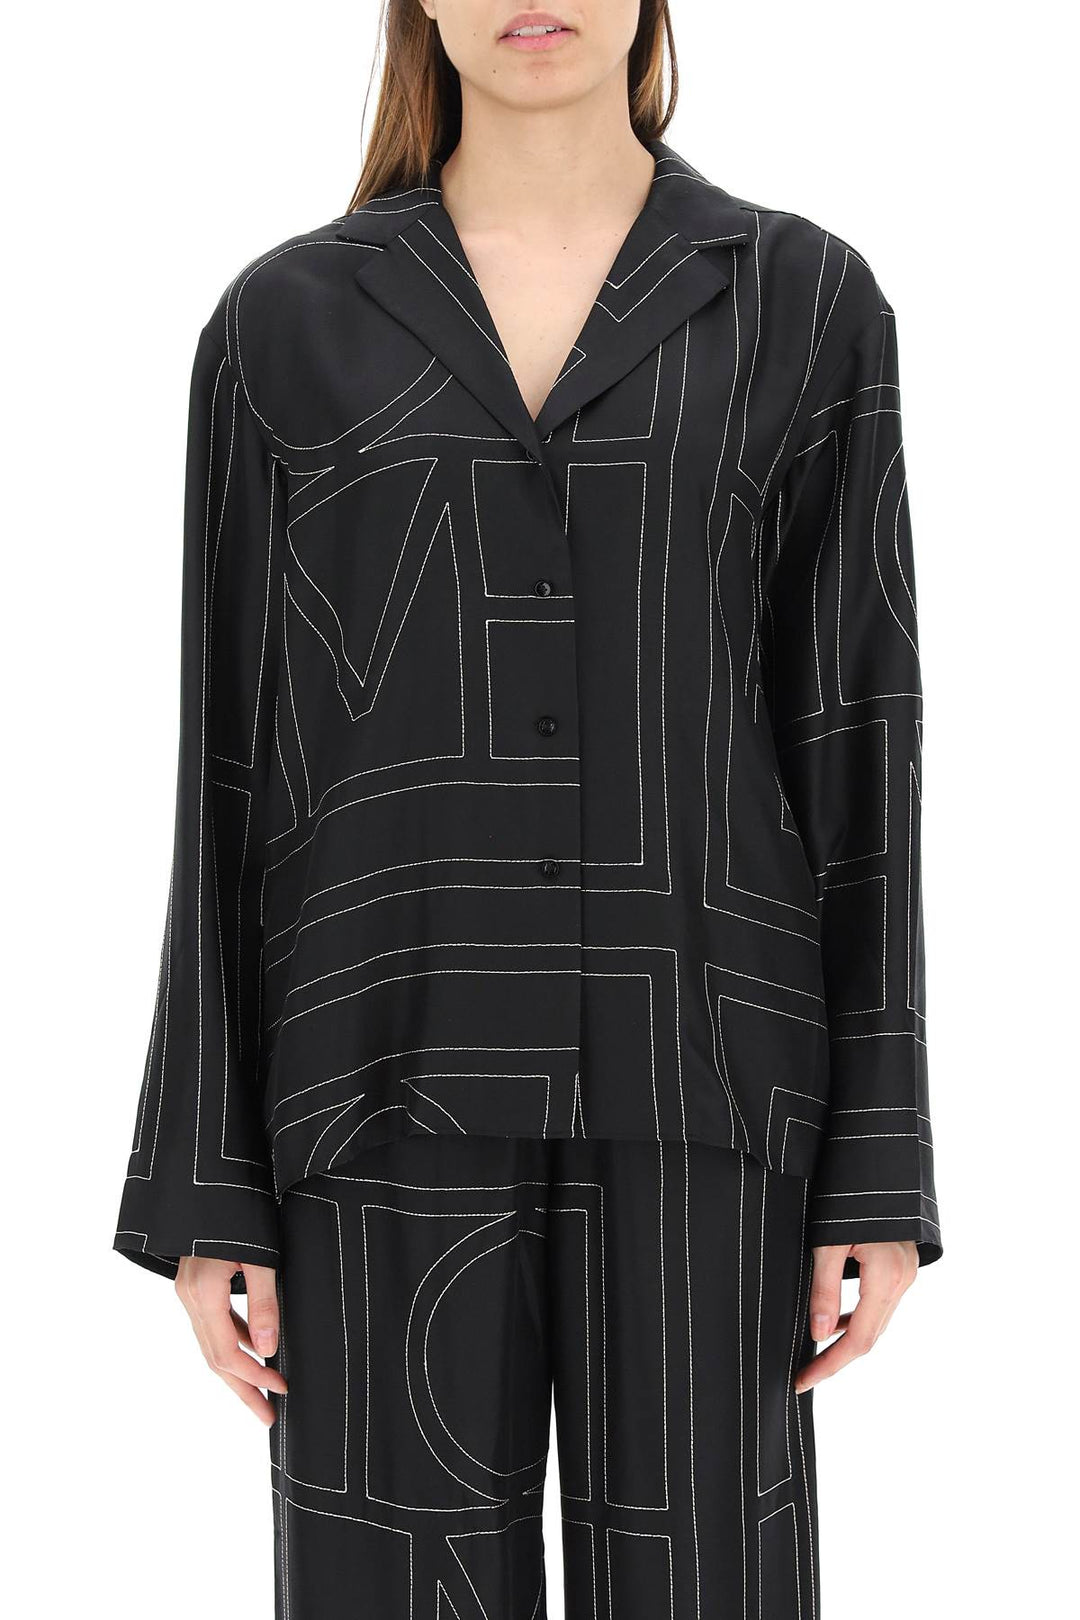 Toteme Monogram Silk Pajama Top   Black